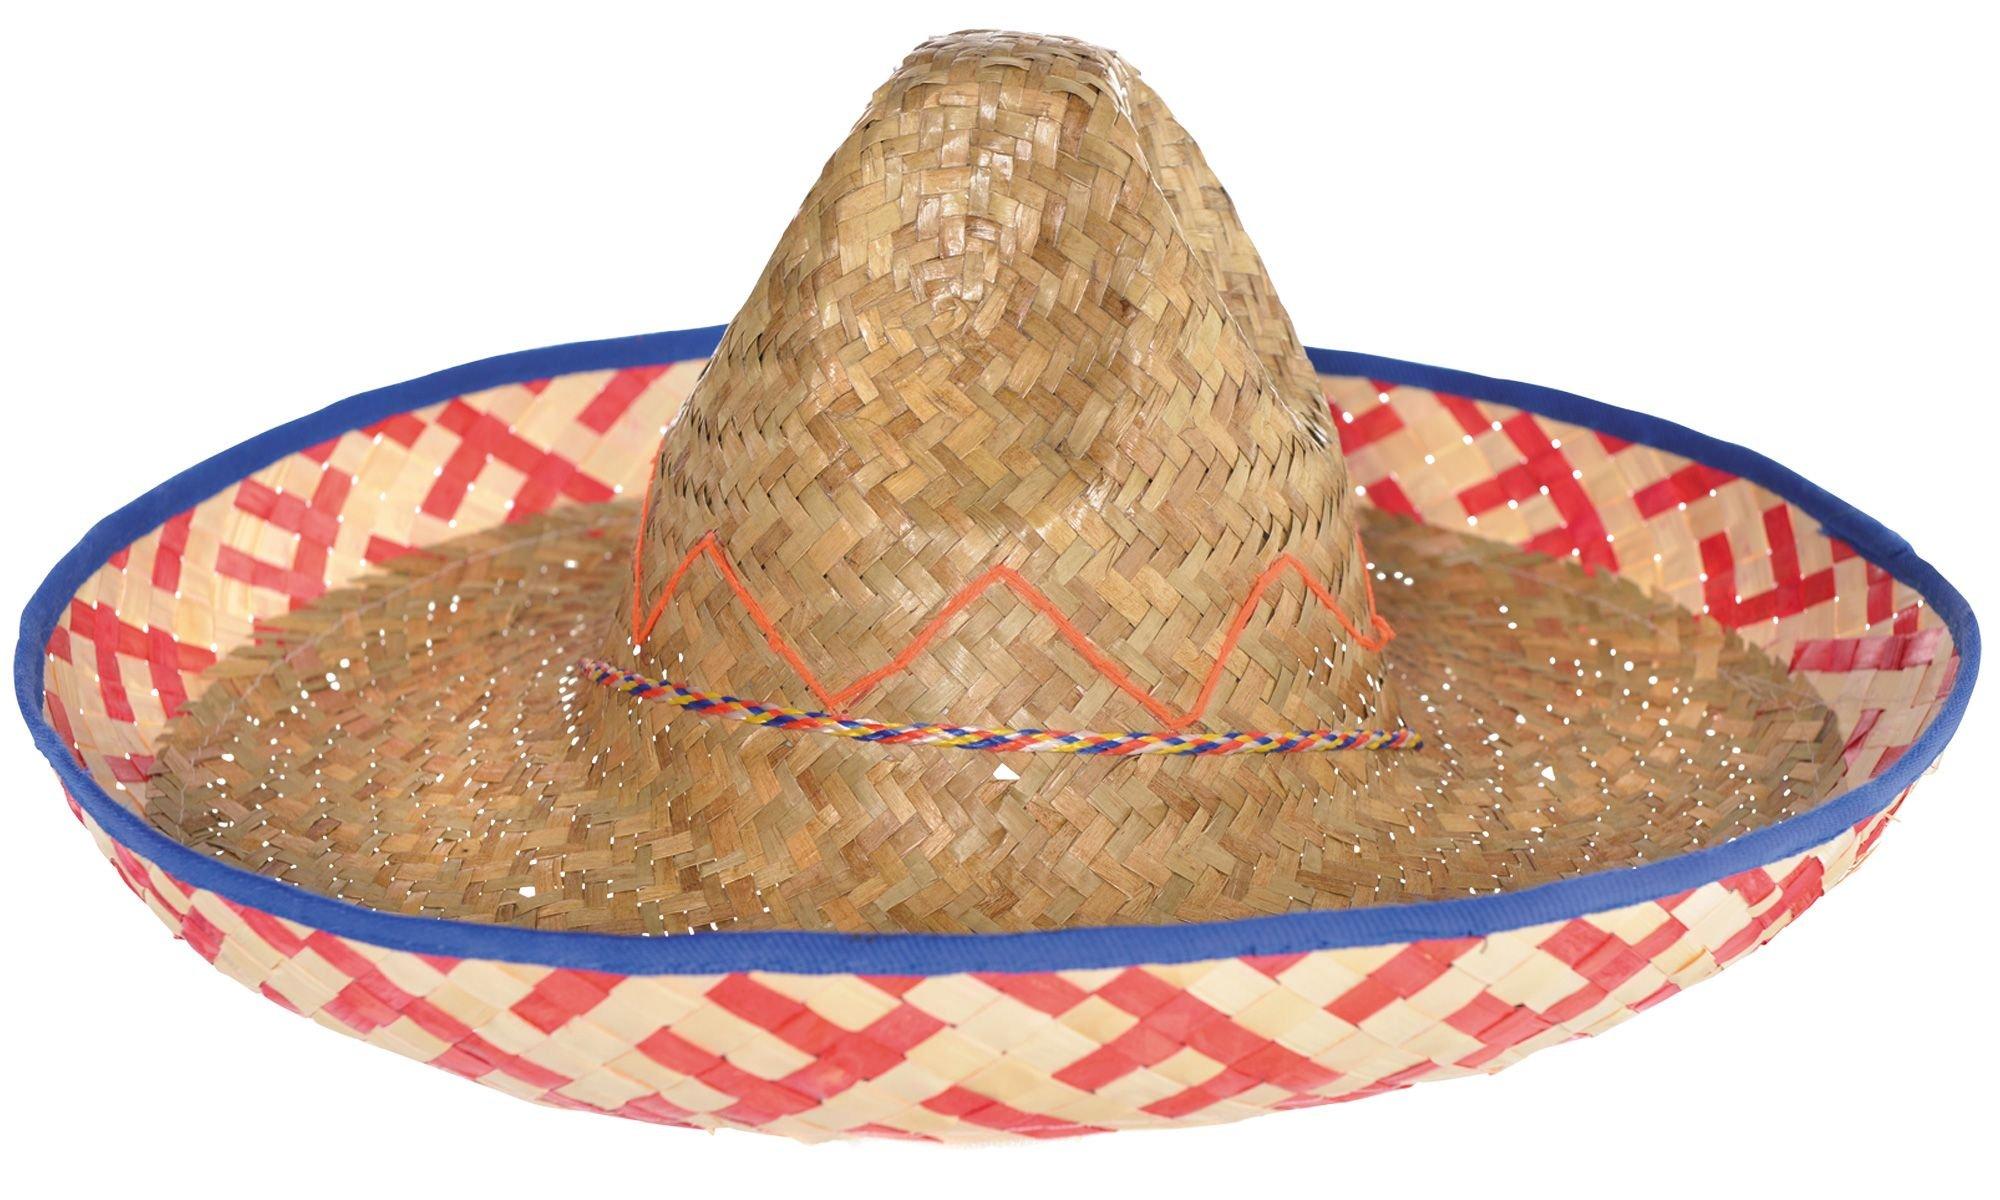 Sombrero Cowboy Hat